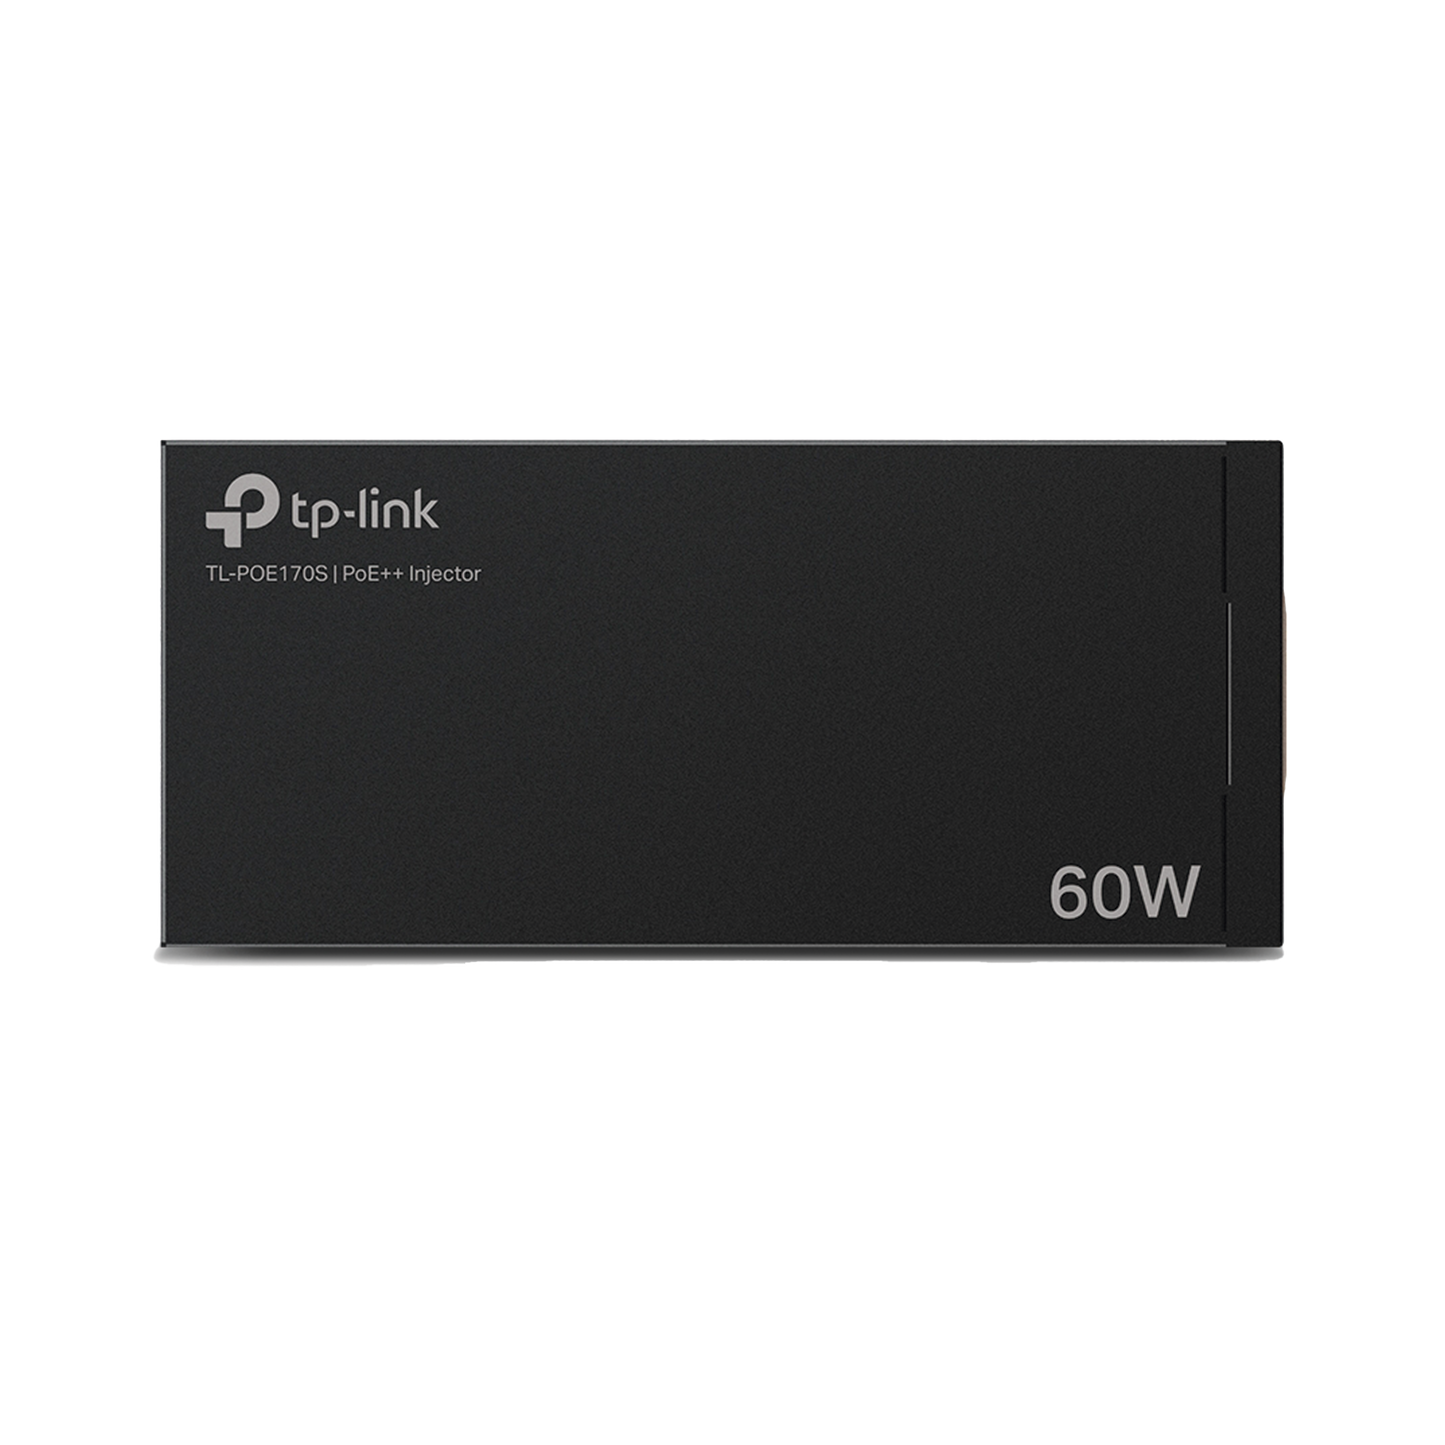 Inyector PoE++ (60W) / Gigabit 802.3 af/at/bt / 2 puerto 10/100/1000 Mbps / Plug and Play / Fuente alimientación Integrada